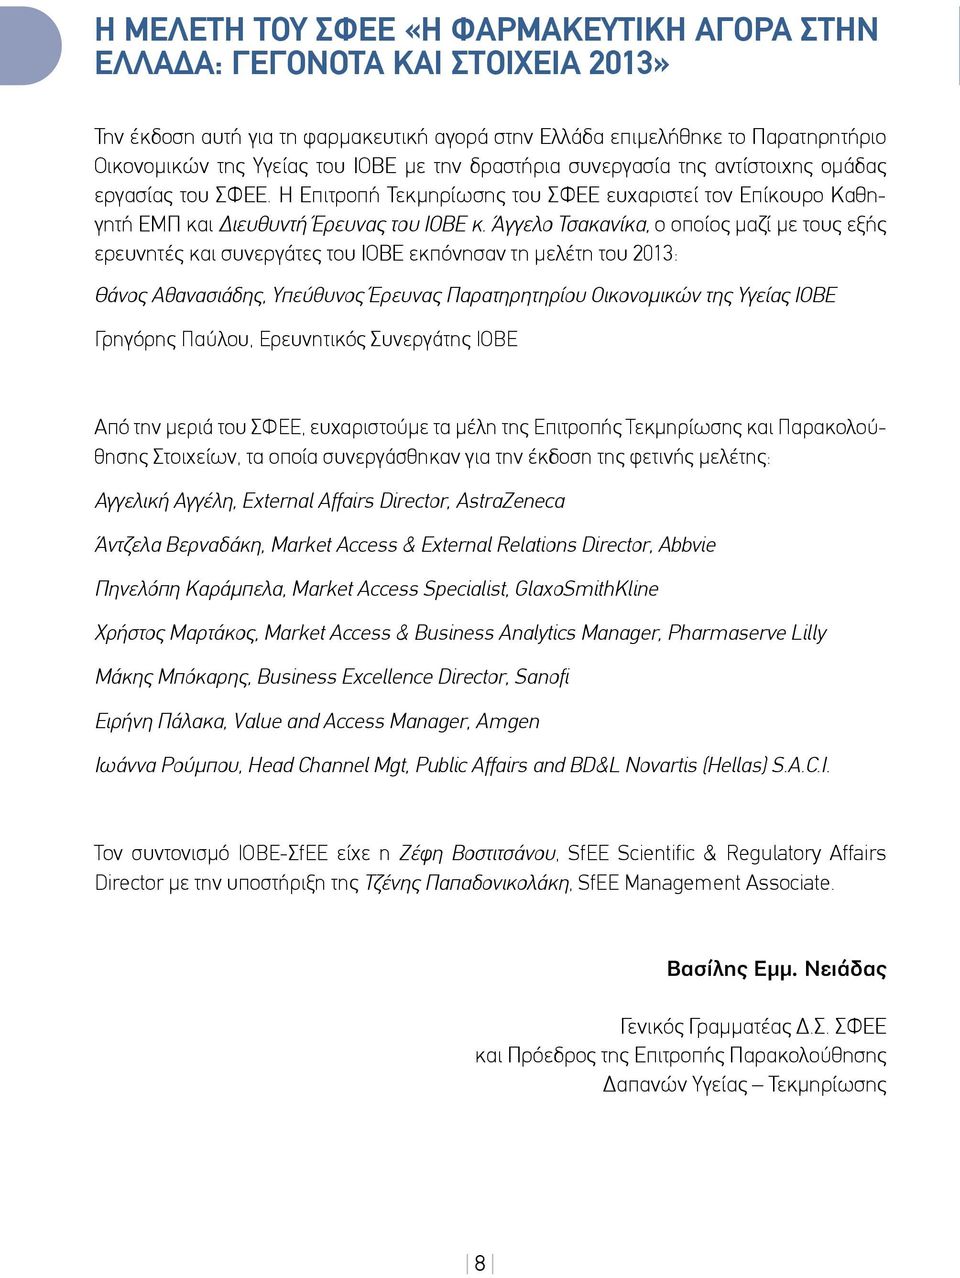 Άγγελο Τσακανίκα, ο οποίος μαζί με τους εξής ερευνητές και συνεργάτες του ΙΟΒΕ εκπόνησαν τη μελέτη του 2013: Θάνος Αθανασιάδης, Υπεύθυνος Έρευνας Παρατηρητηρίου Οικονομικών της Υγείας ΙΟΒΕ Γρηγόρης